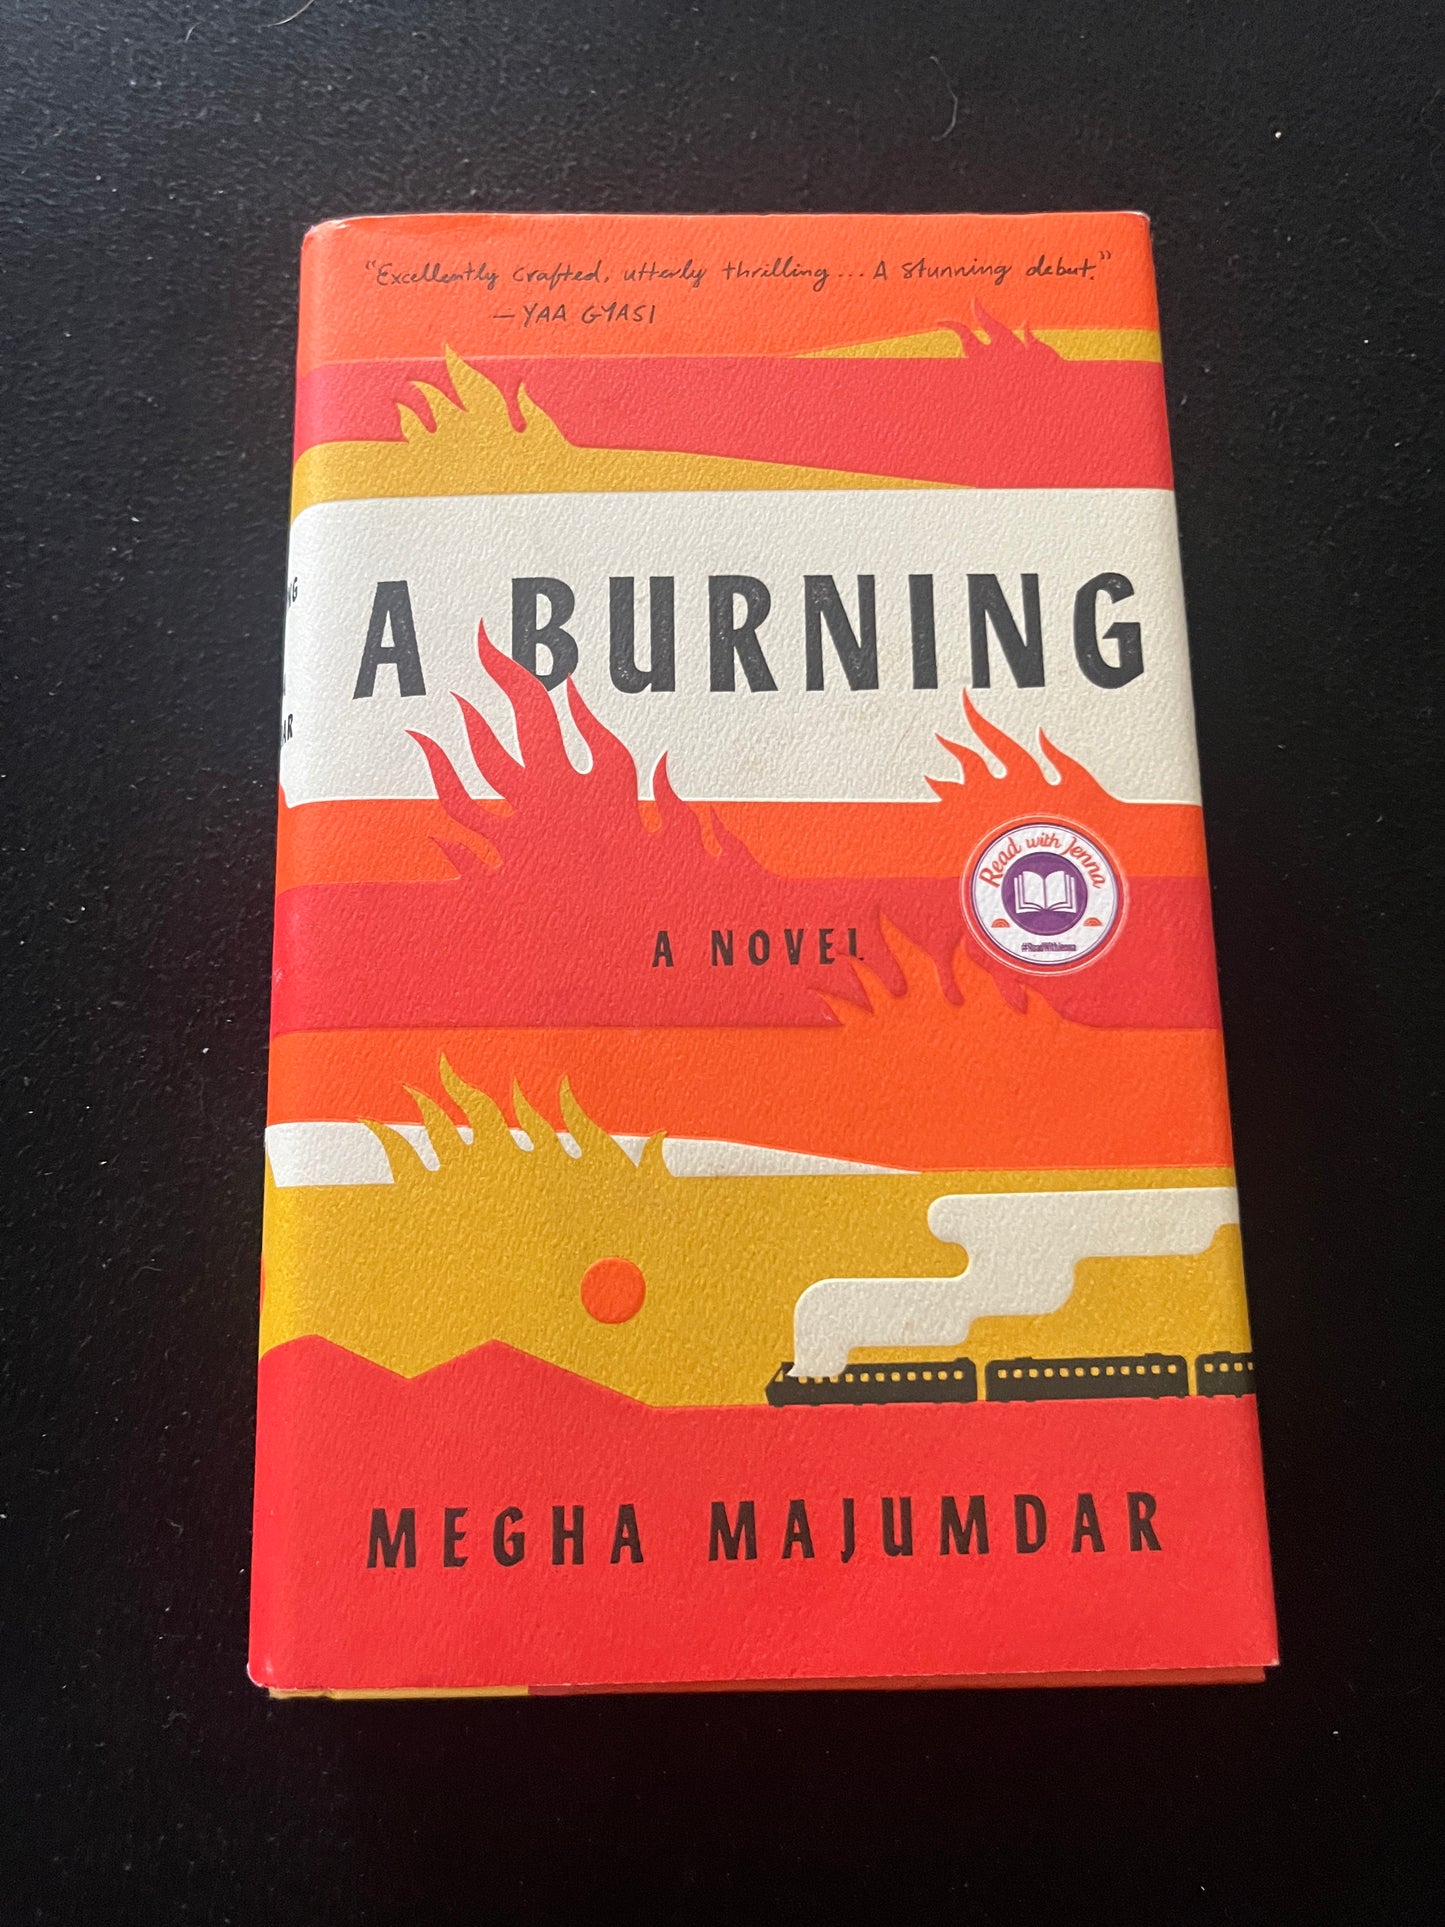 A BURNING by Megha Majumdar